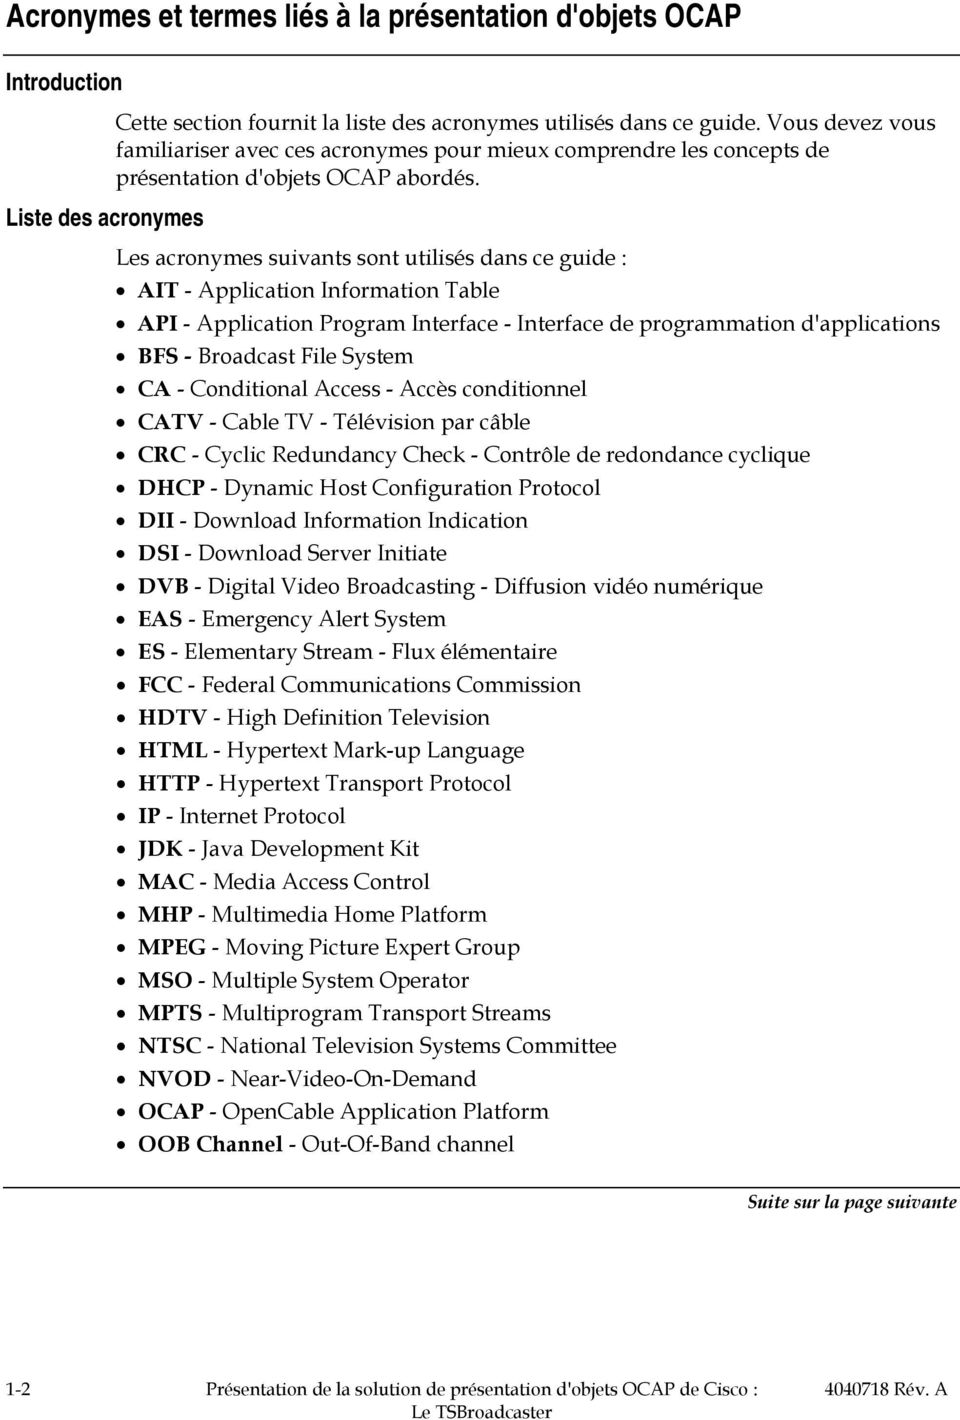 Les acronymes suivants sont utilisés dans ce guide : AIT - Application Information Table API - Application Program Interface - Interface de programmation d'applications BFS - Broadcast File System CA